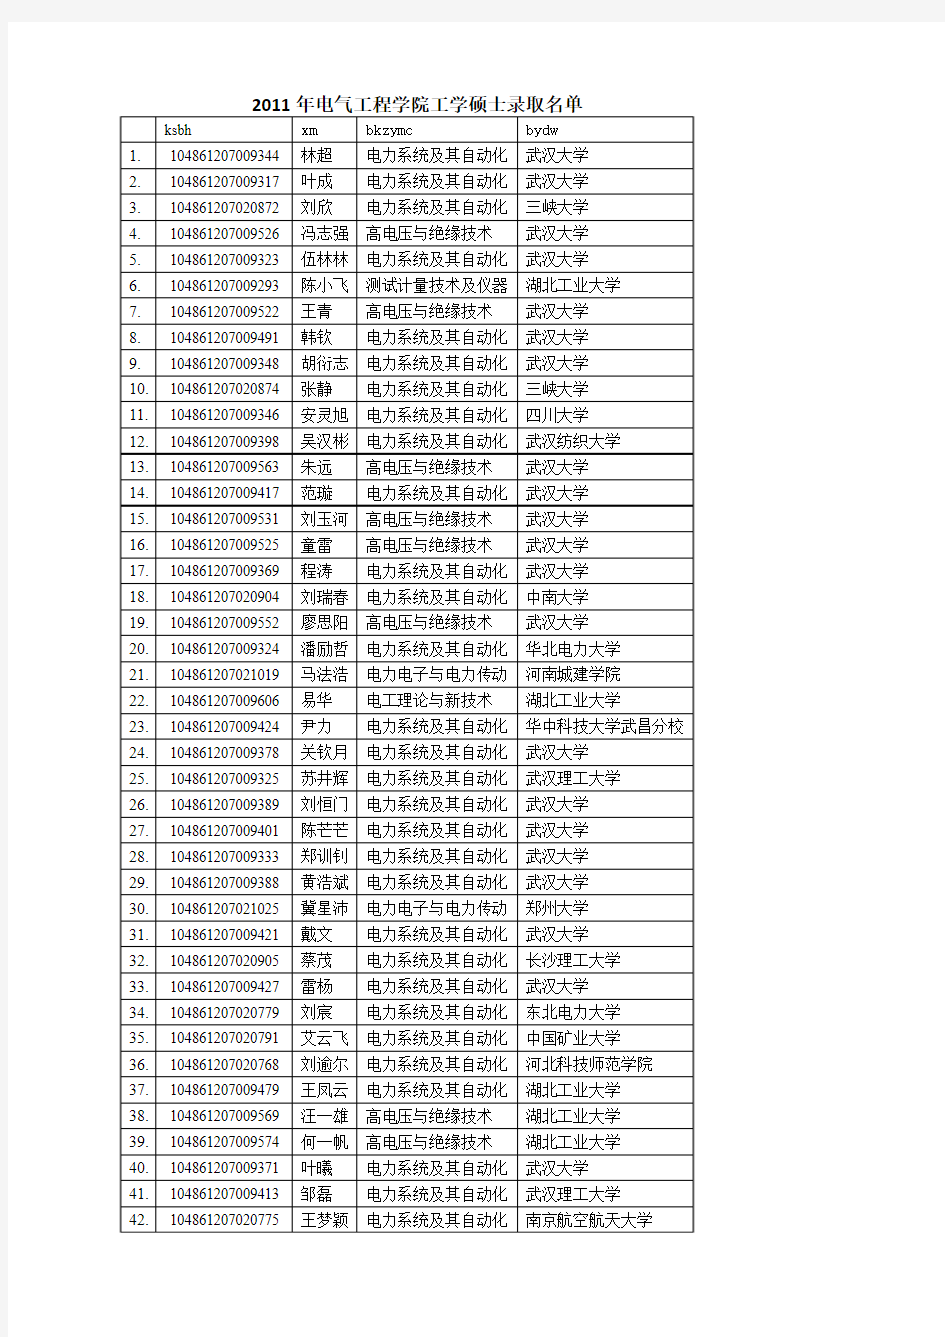 武汉大学电气工程学院2011级工学硕士录取名单